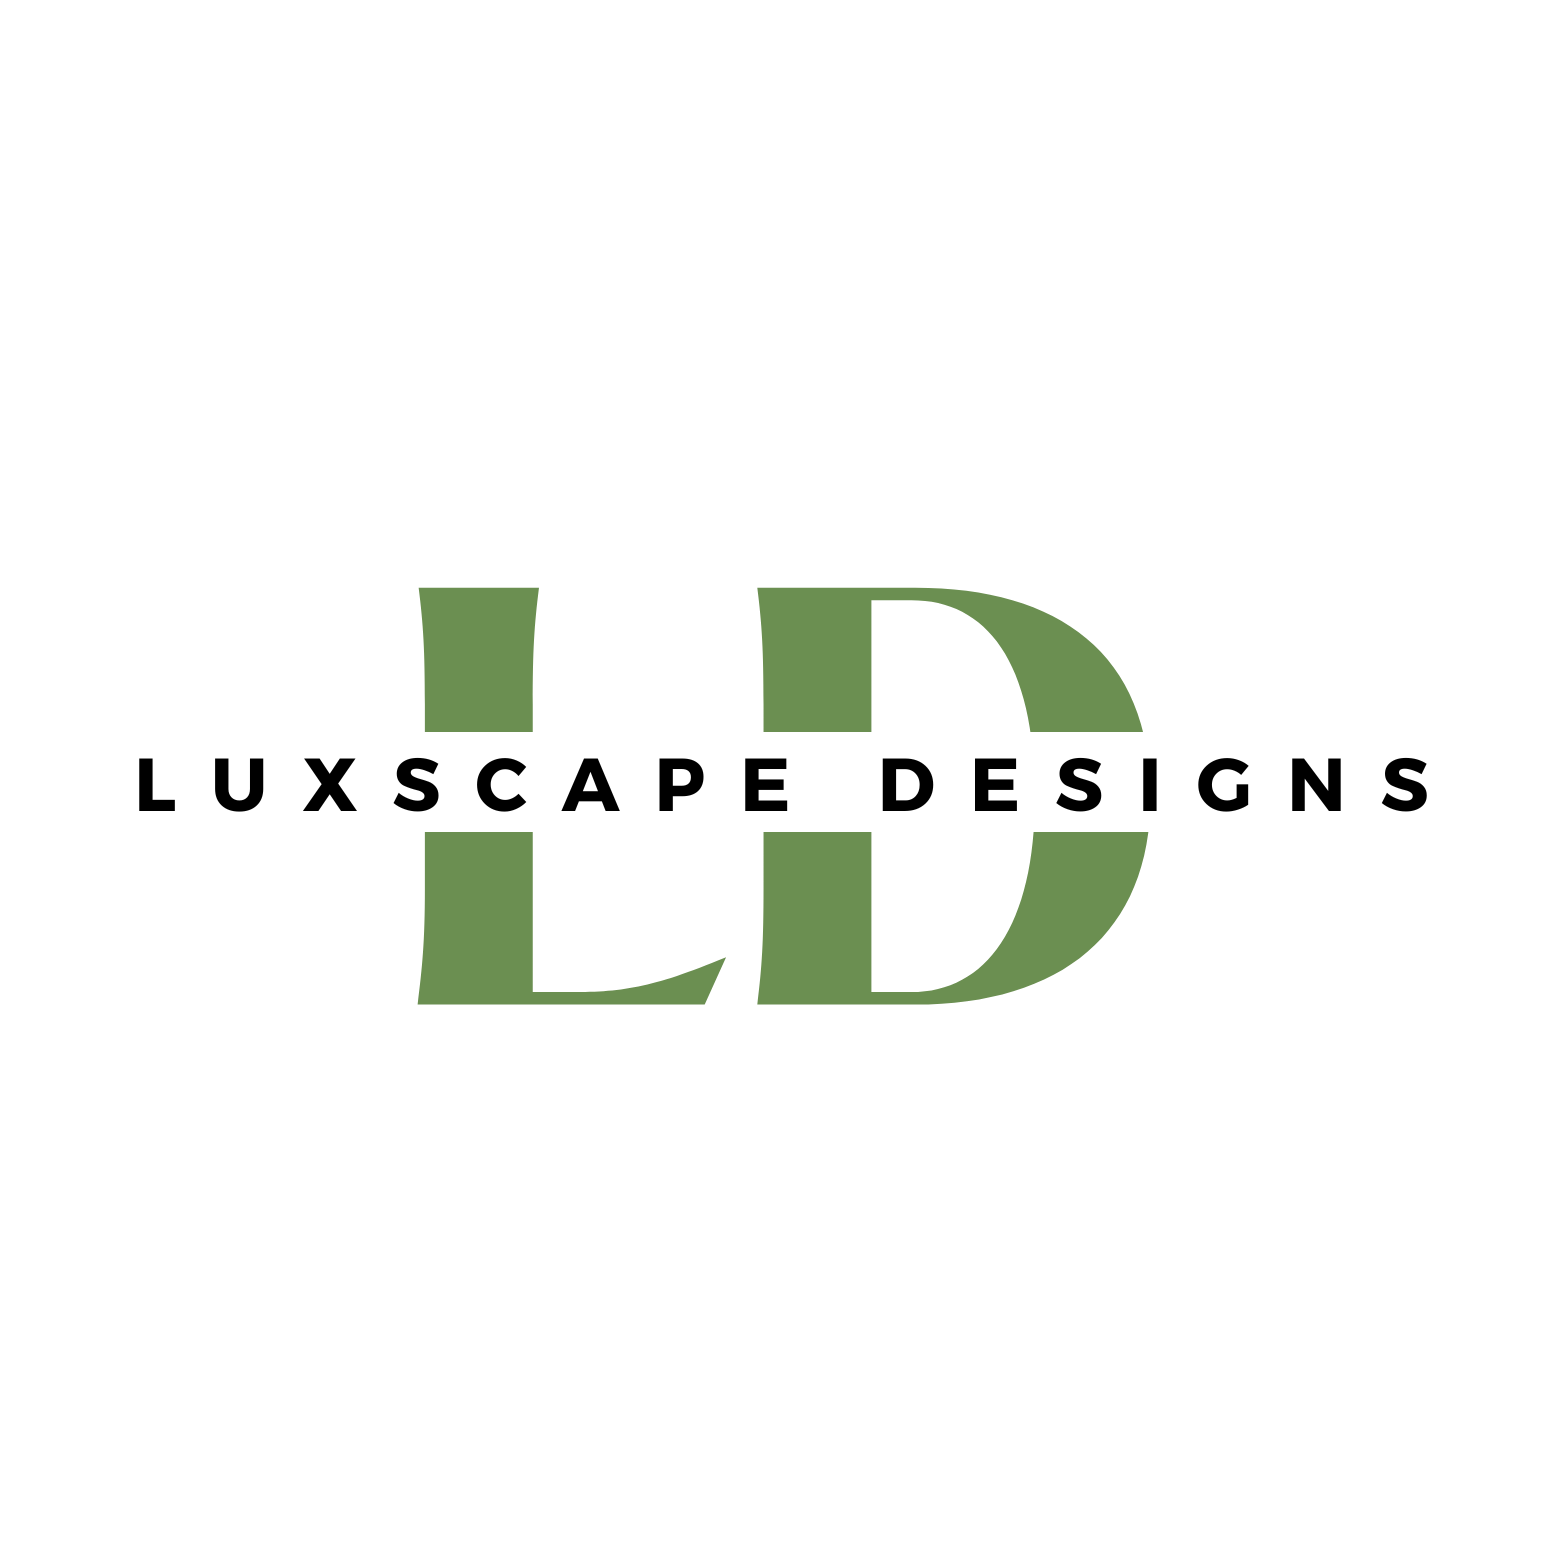 Luxscape Designs